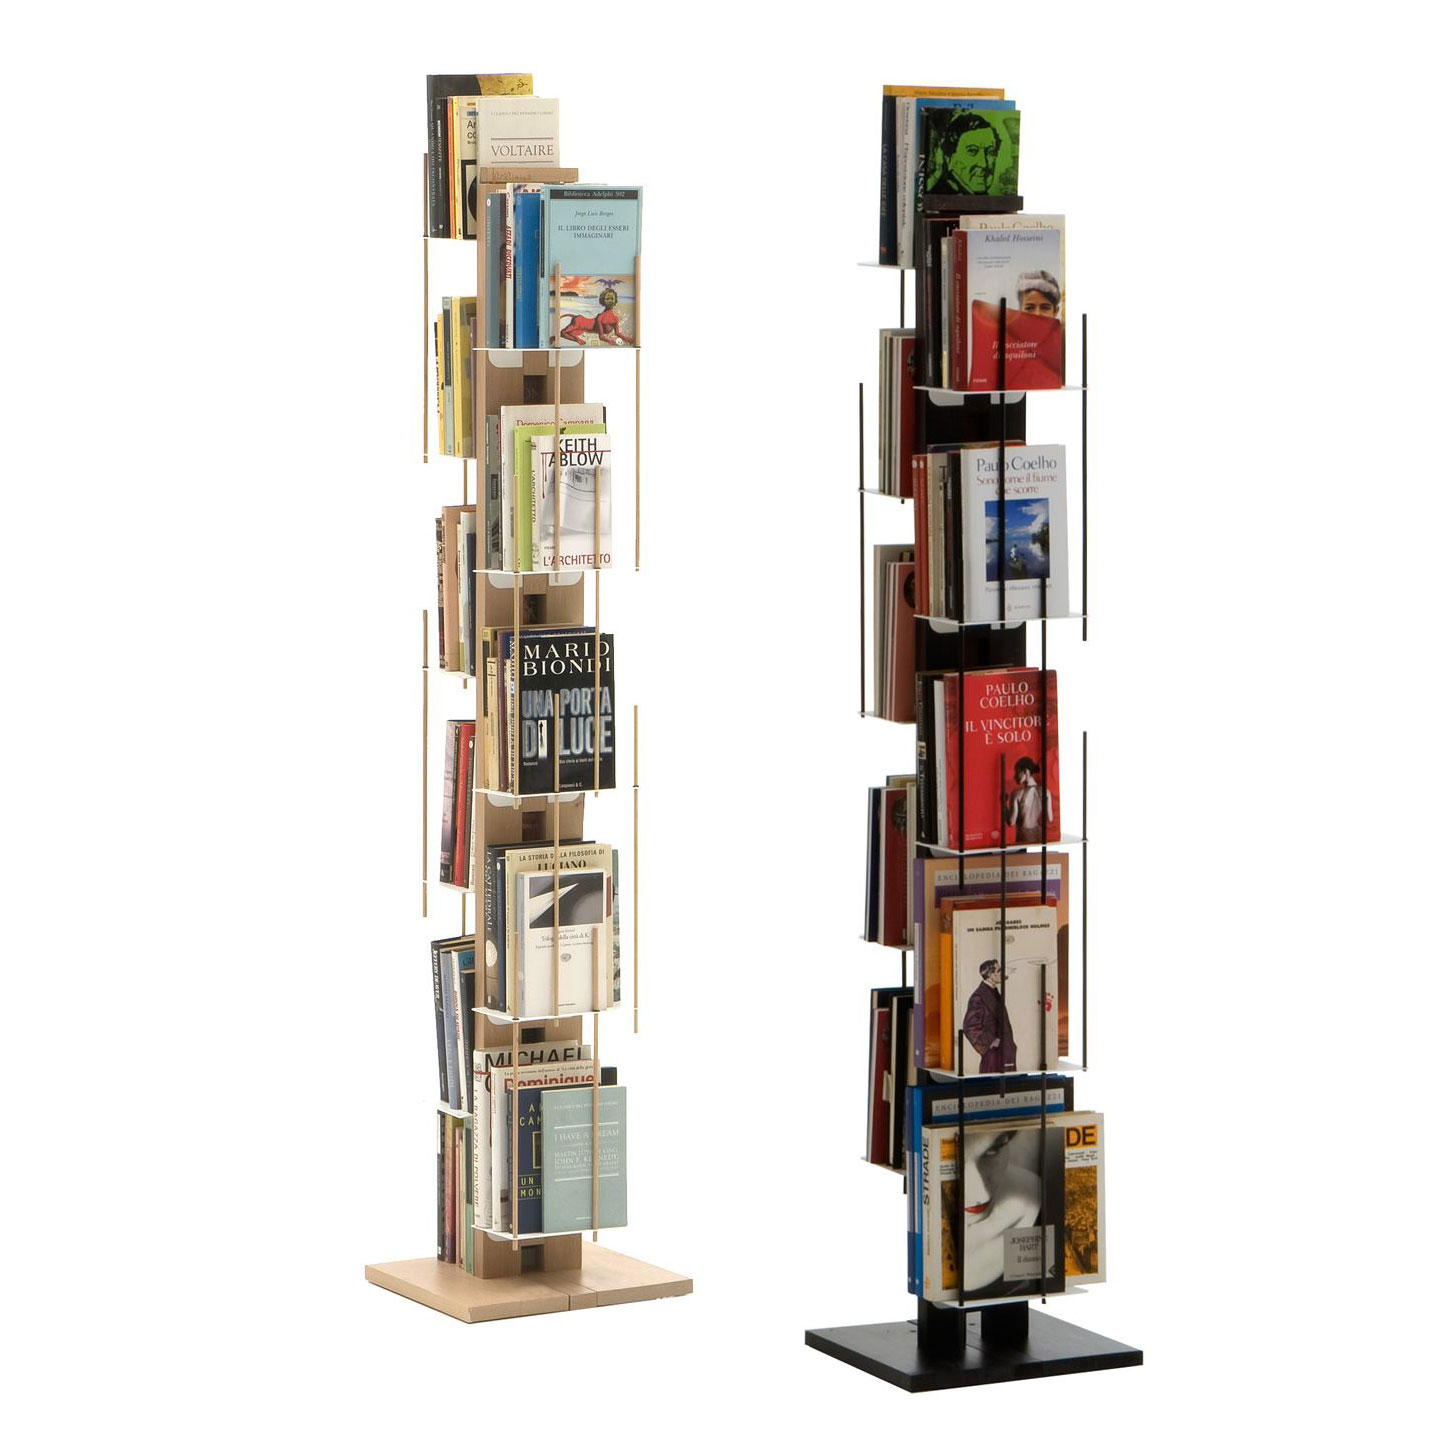 Libreria verticale Fissaggio a PARETE SOSPESA ZIA VERONICA 20x32xh 65 cm  con struttura e bacchette in legno massello di faggio evaporato colore  NERO.